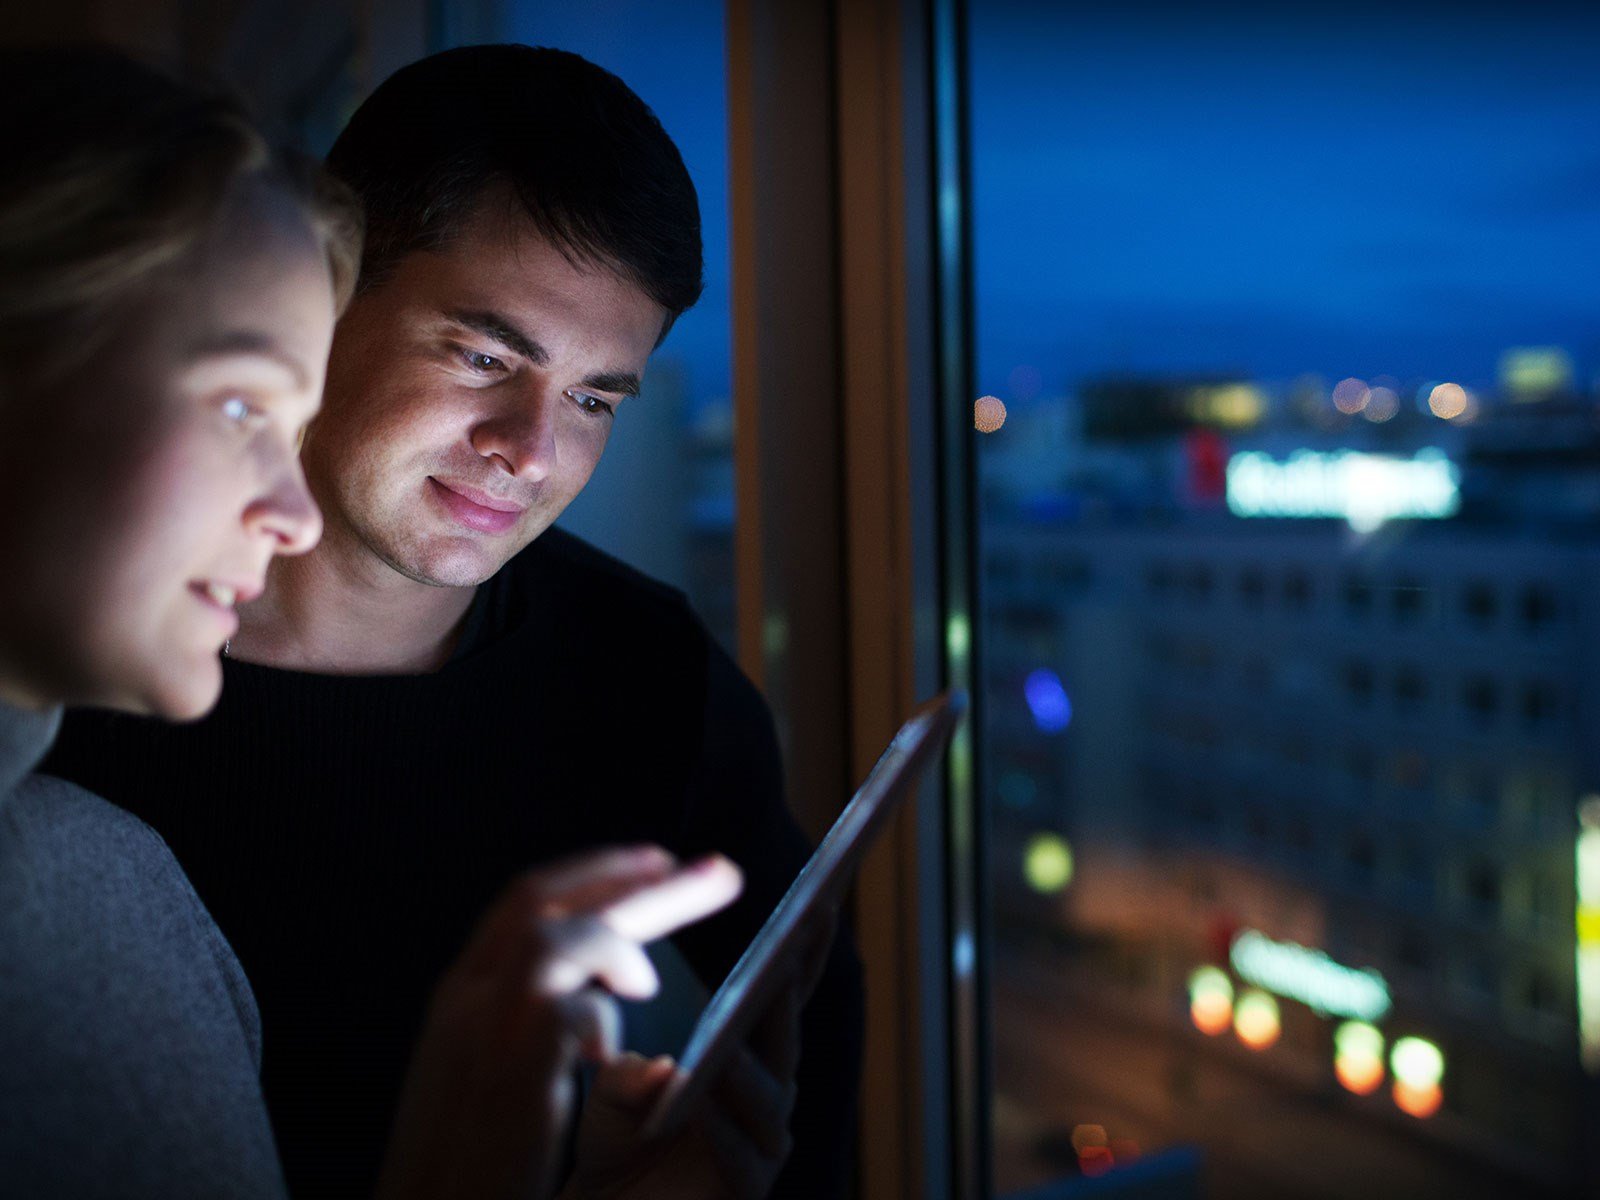 Ungt par kigger på iPad ved vindue om aftenen, hvor der typisk er billigere strøm end om dagen. 